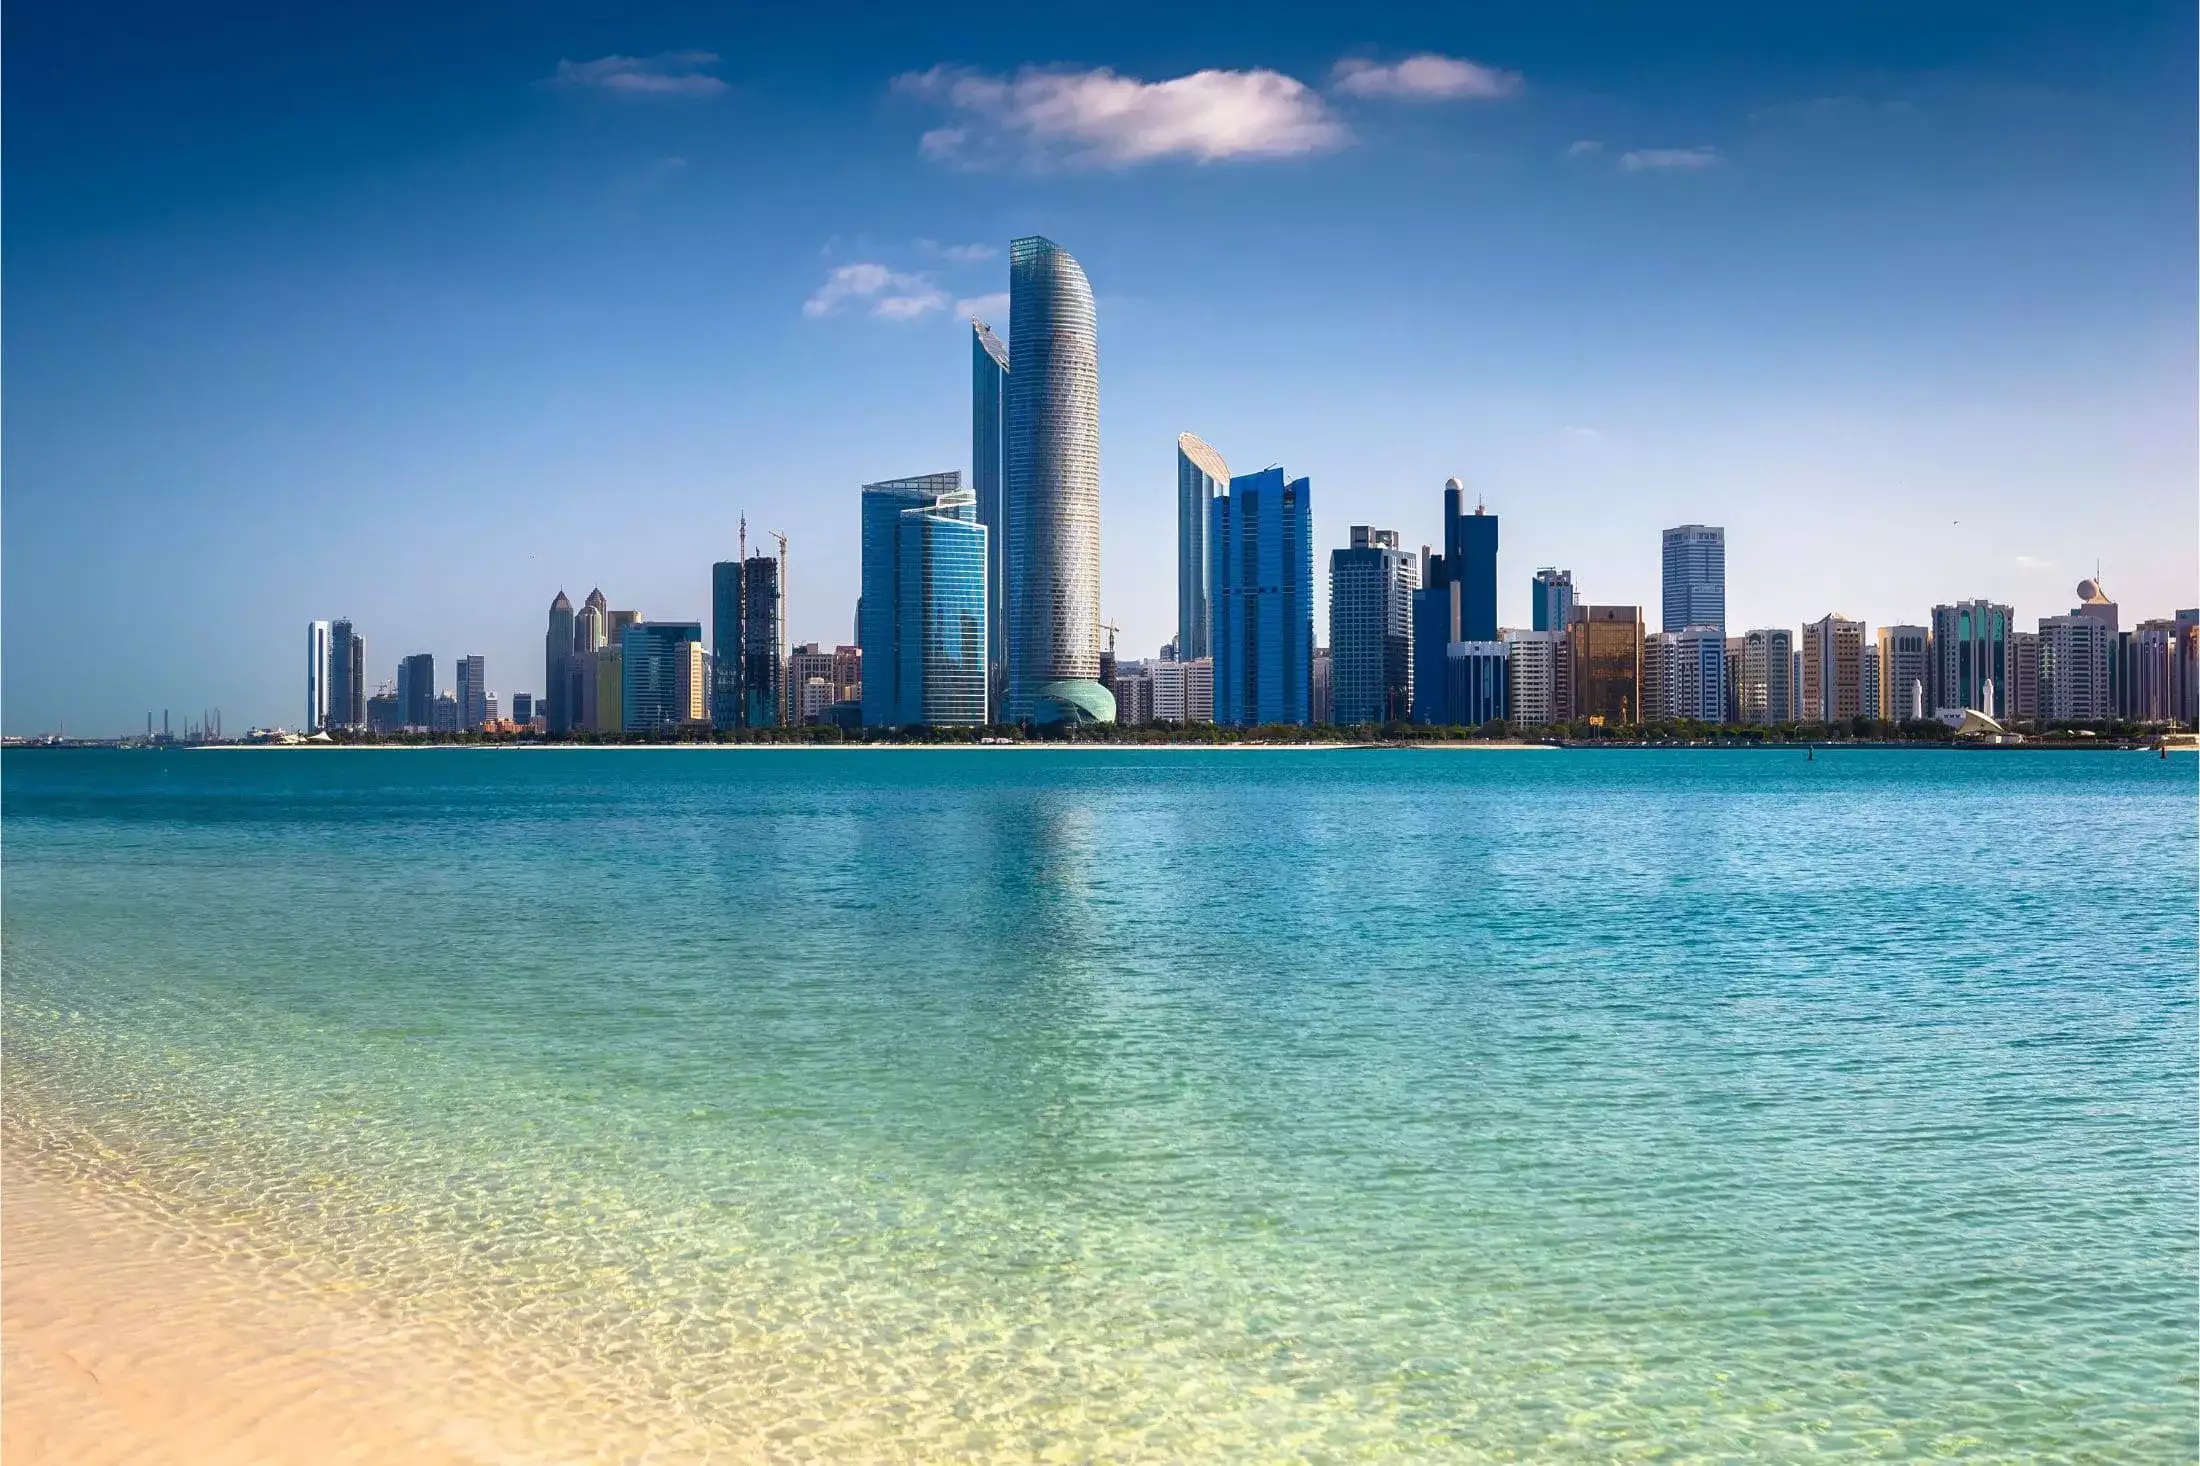 Abu Dhabi Skyline during a sunny day